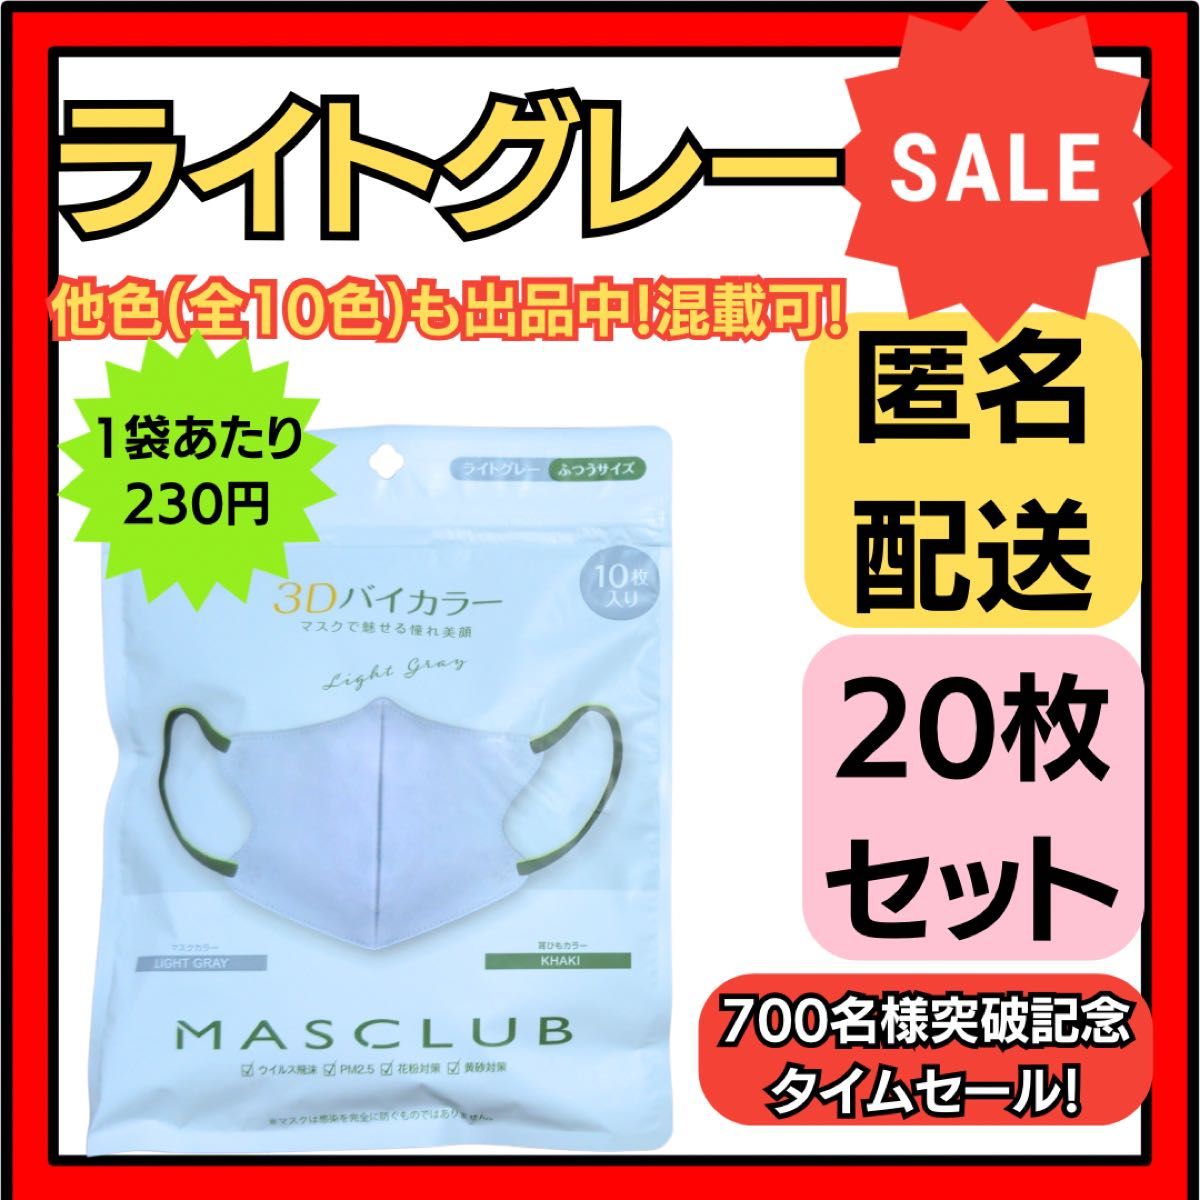 【在庫処分価格】バイカラー立体3D小顔不織布マスクライトグレー10枚×2袋